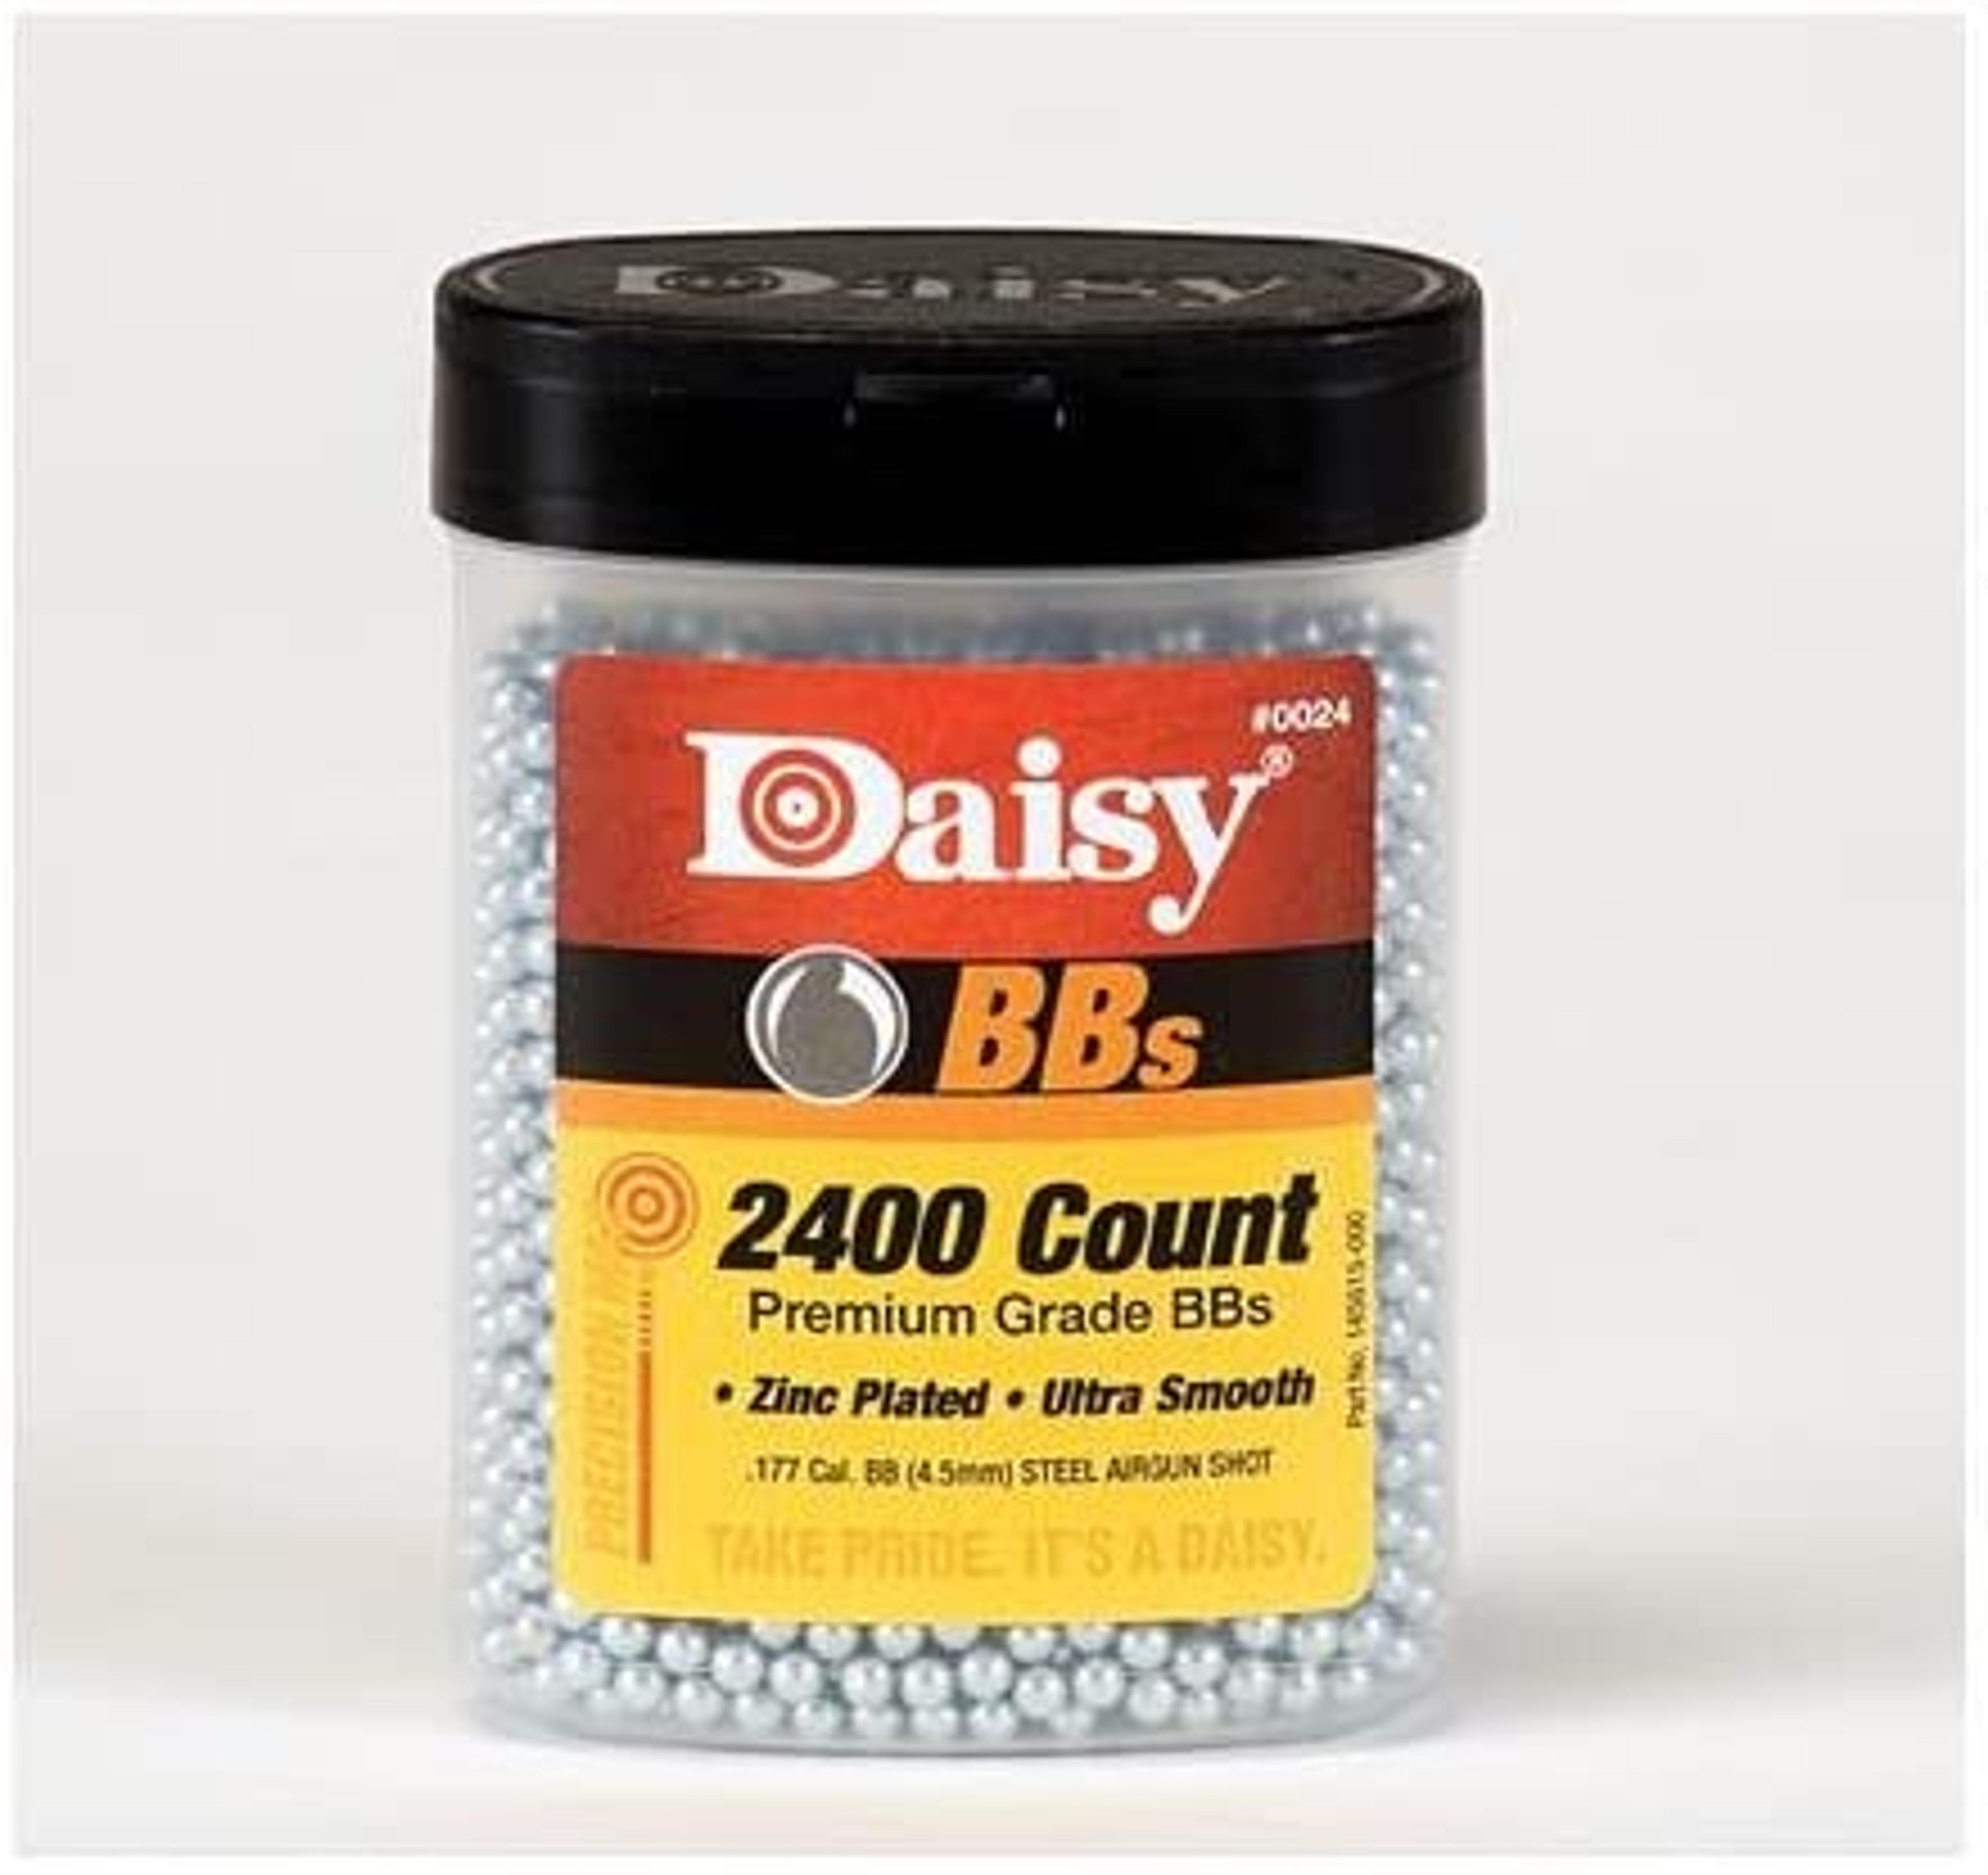  Daisy 2400 Count Bbs